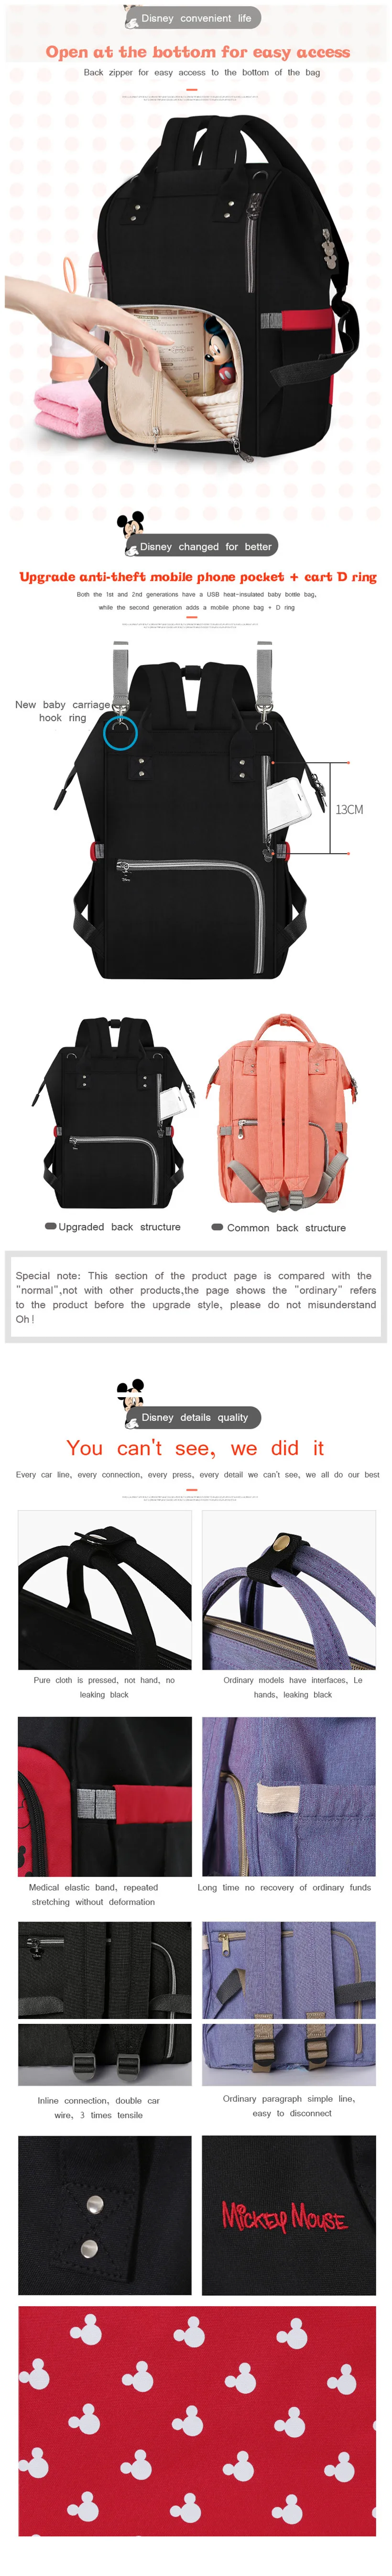 Disney пеленки мешок рюкзак USB Изоляция материнства Сумки Оксфорд путешествия рюкзаки кормление уход за ребенком Мумия подгузник коляска сумка